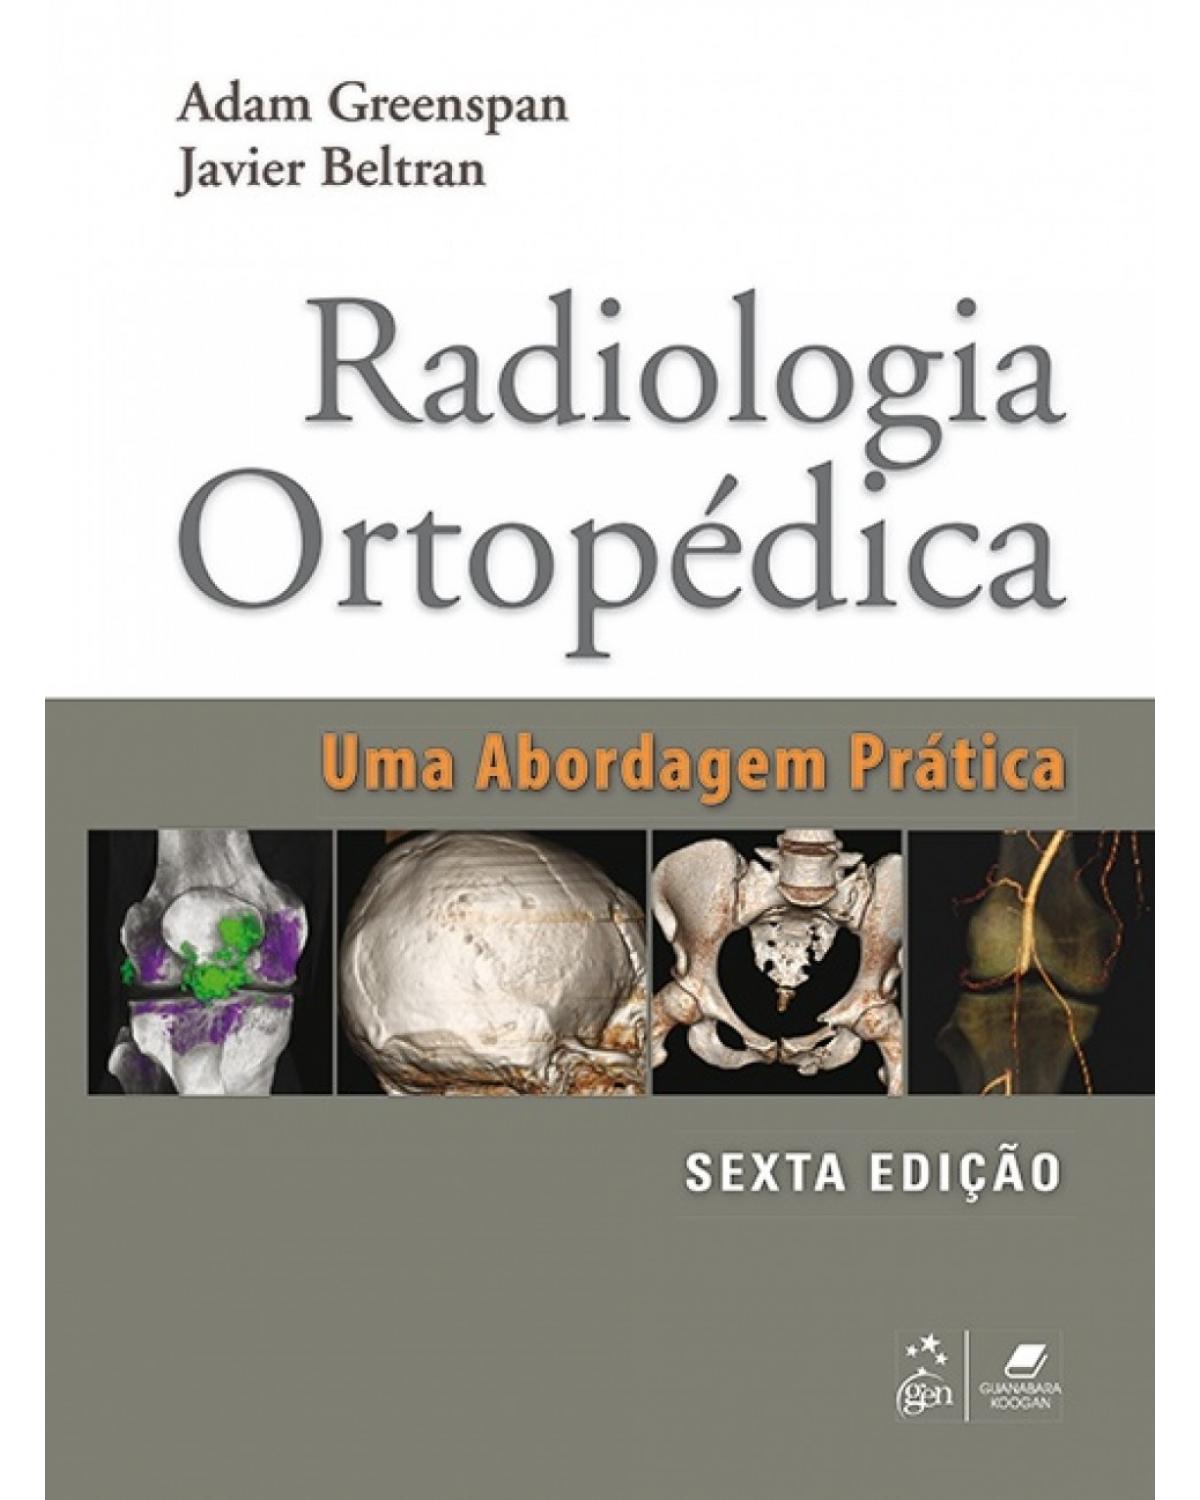 Radiologia ortopédica - Uma abordagem prática - 6ª Edição | 2017